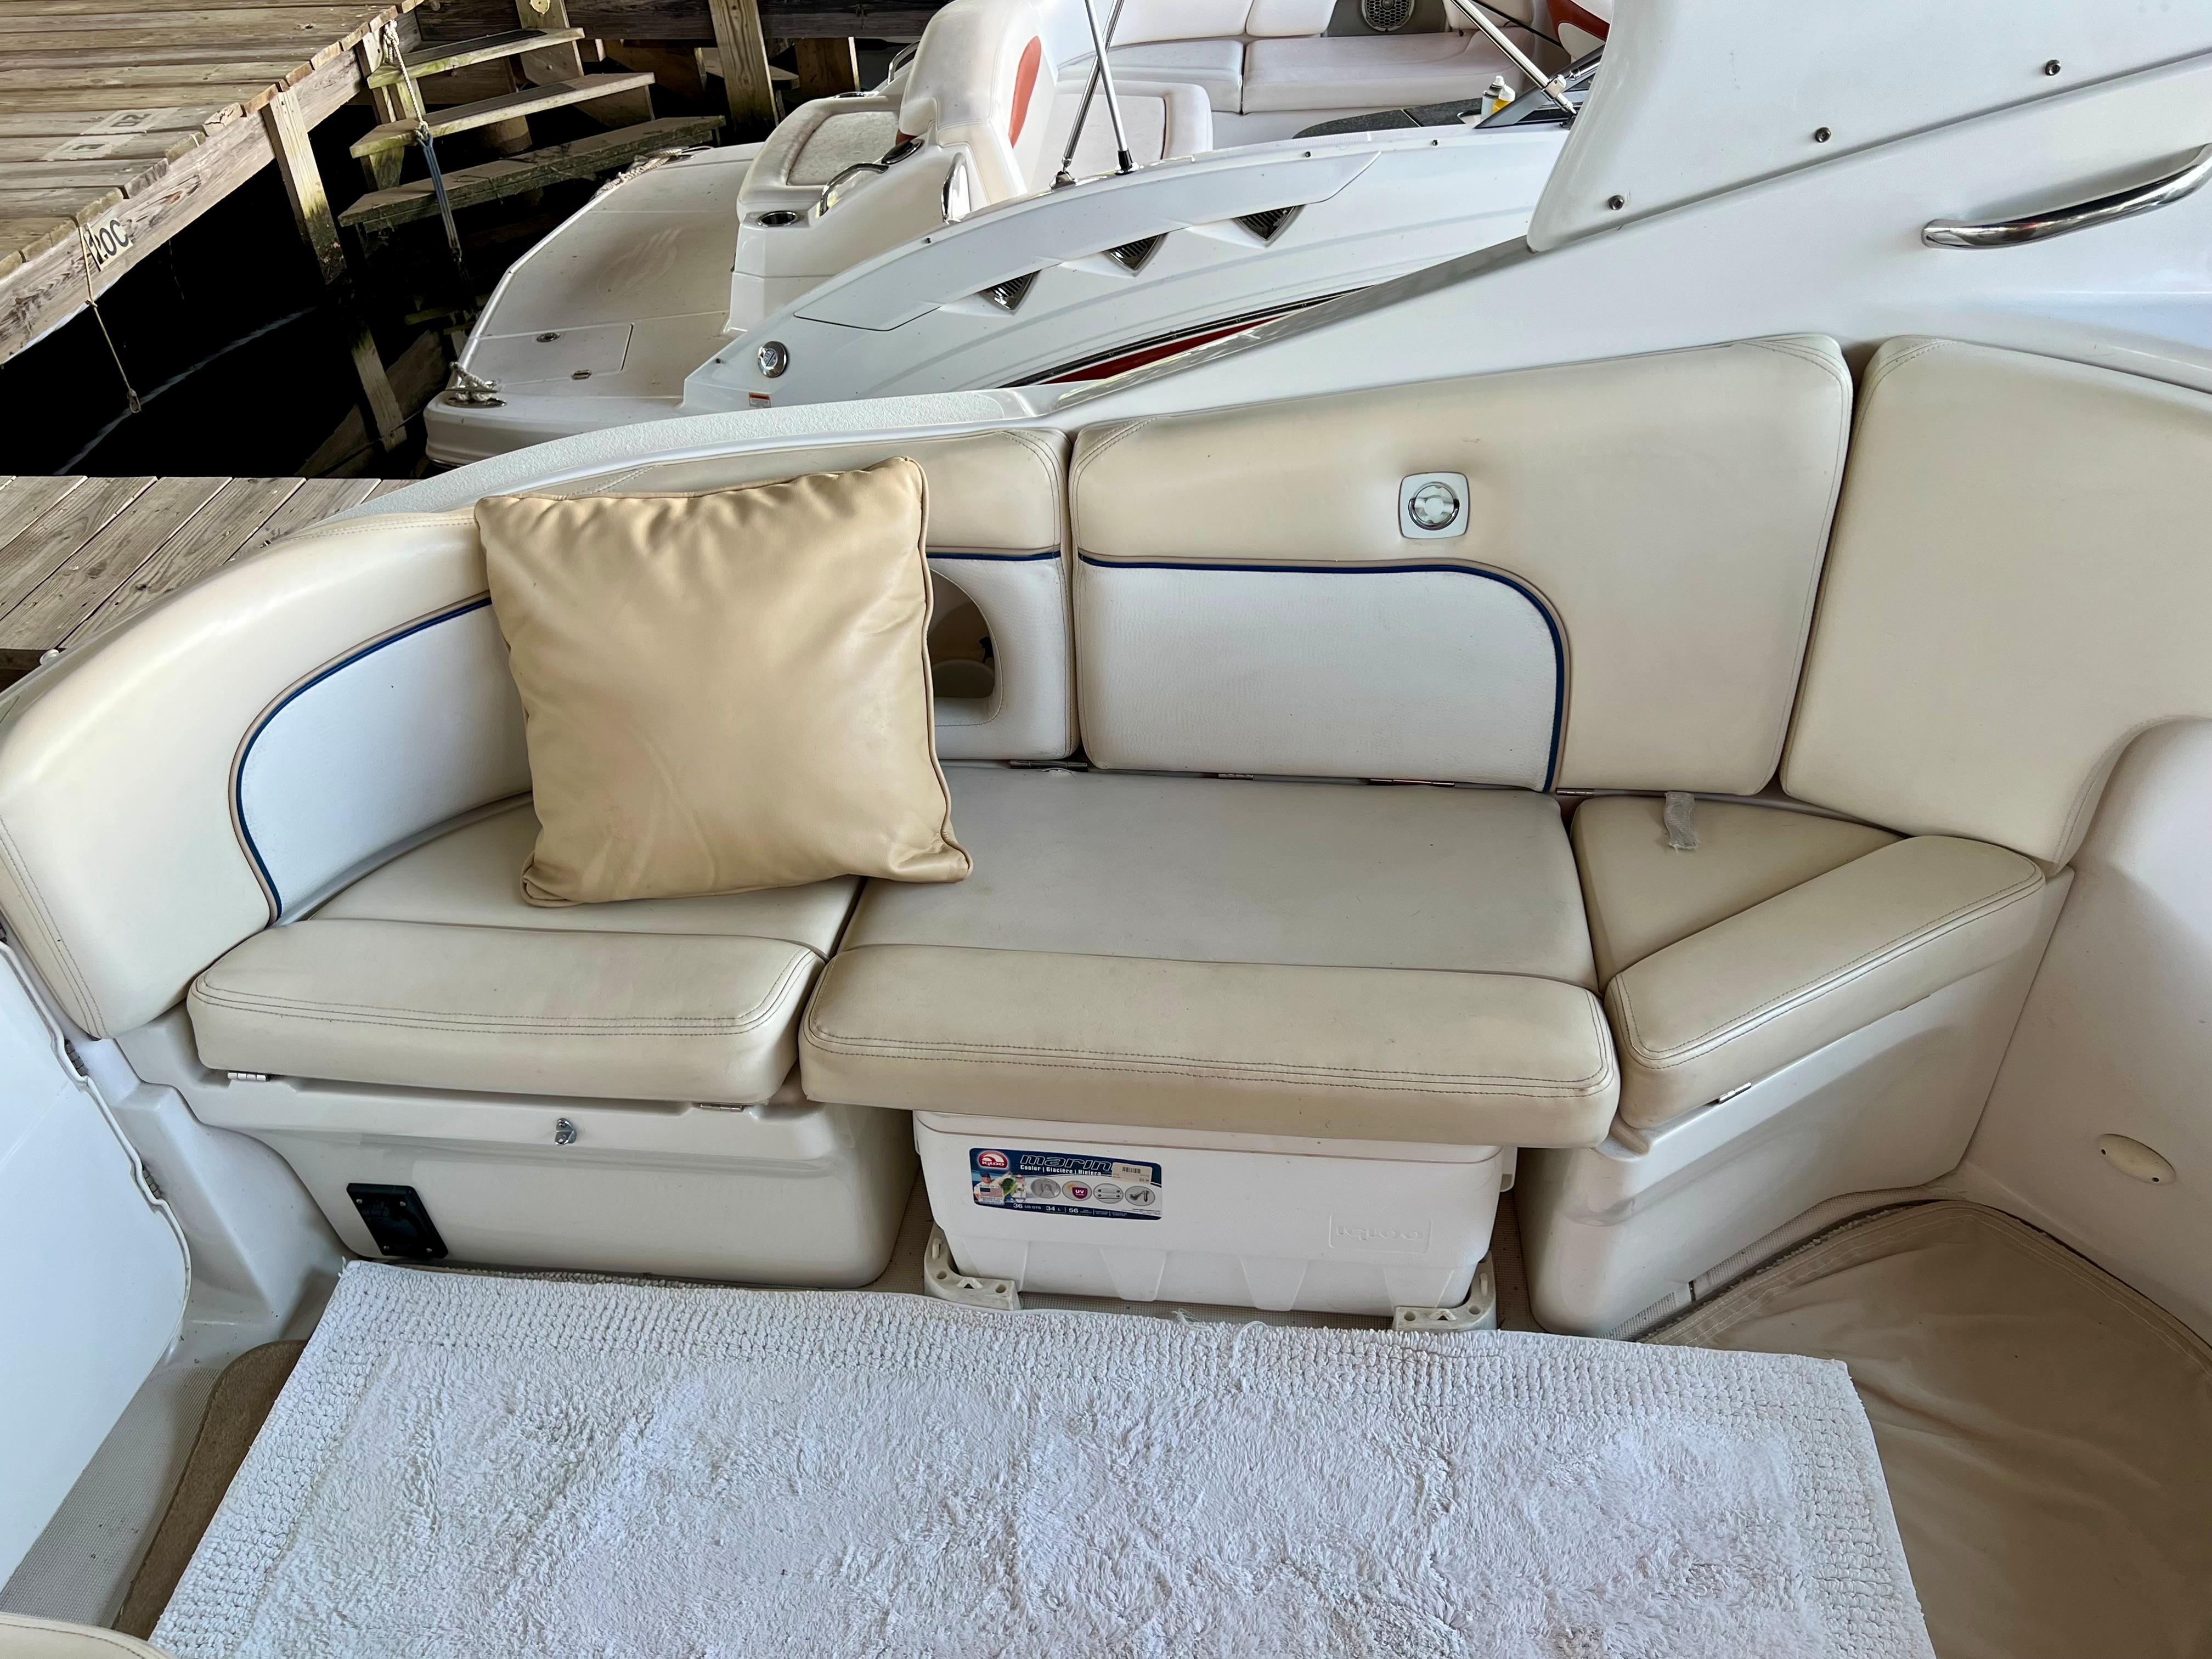 cockpit seating, cooler storage